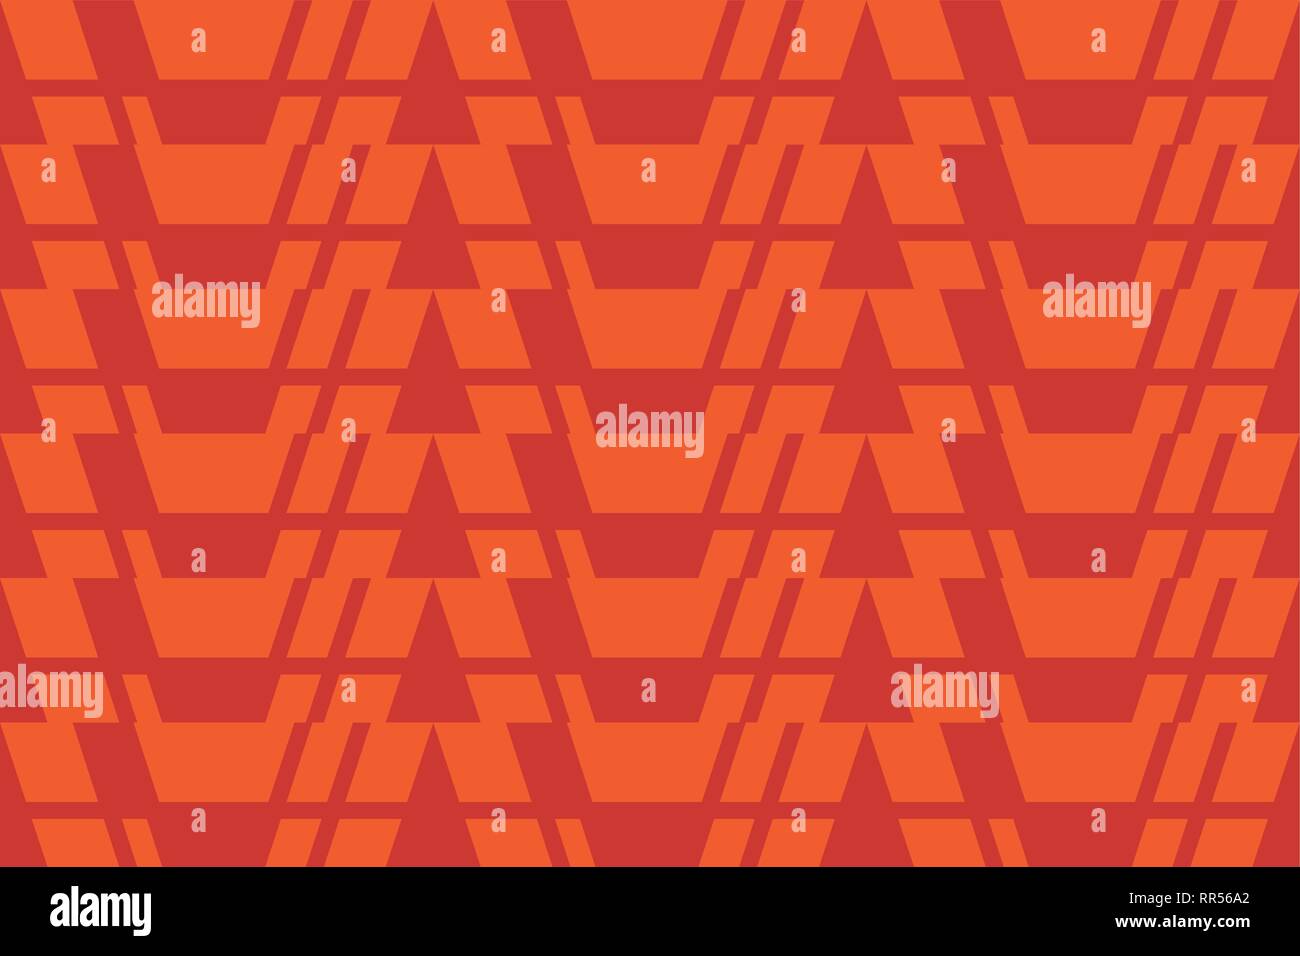 Seamless pattern abstract background, faite avec des formes géométriques en rouge et orange. Vecteur de décoration l'art. Illustration de Vecteur